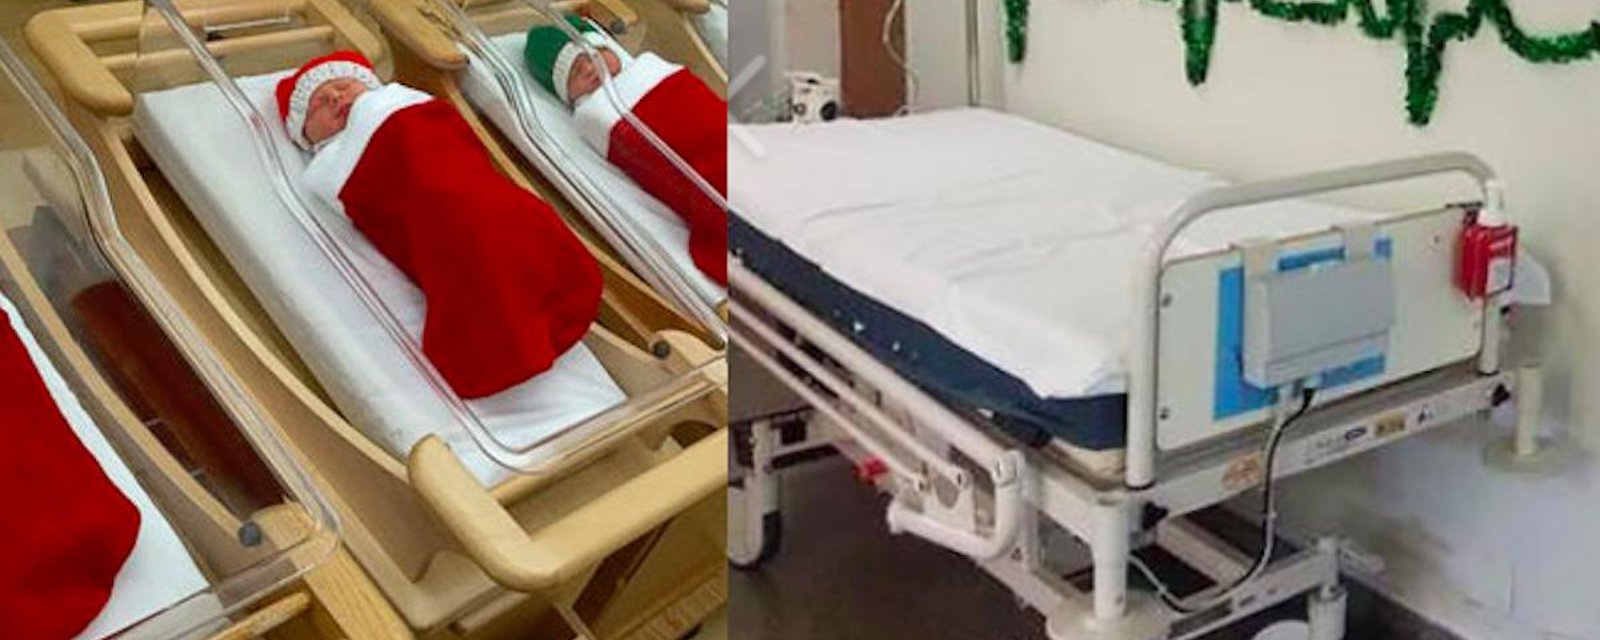 Décorations hospitalières: 9 photos qui montrent que la magie de Noël peut être partout!